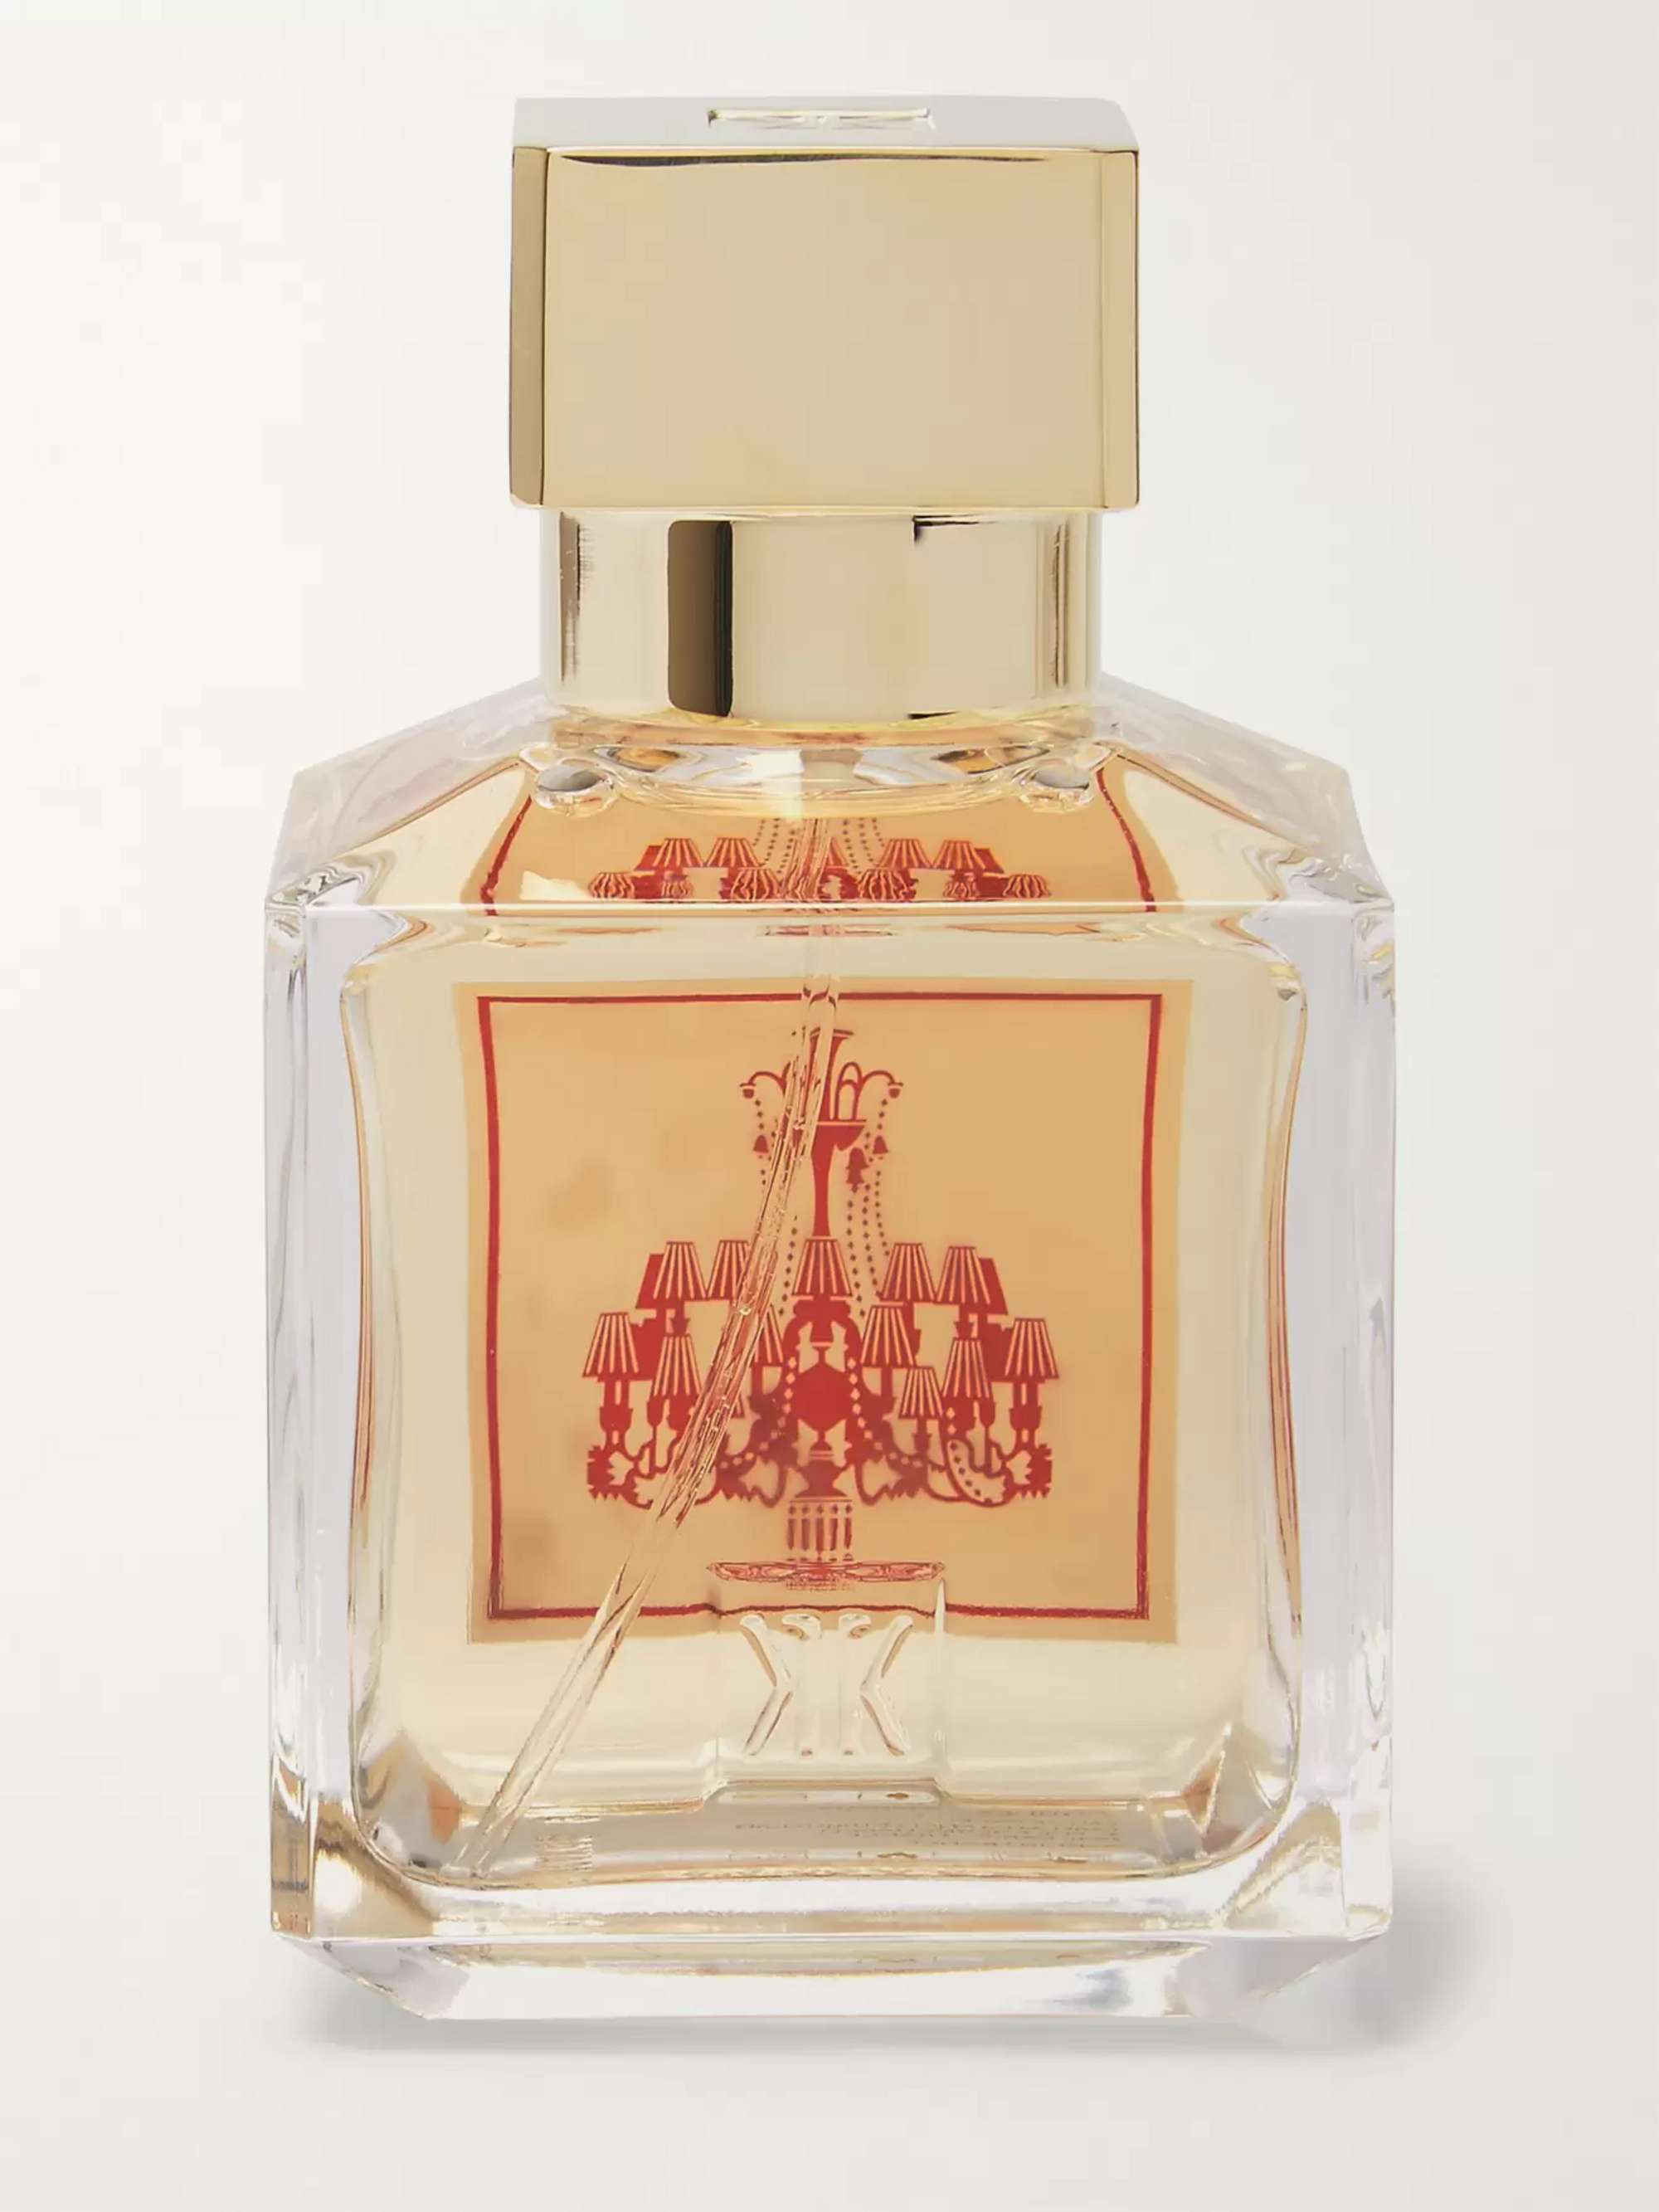 MAISON FRANCIS KURKDJIAN Baccarat Rouge 540 Extrait De Parfum, 200ml